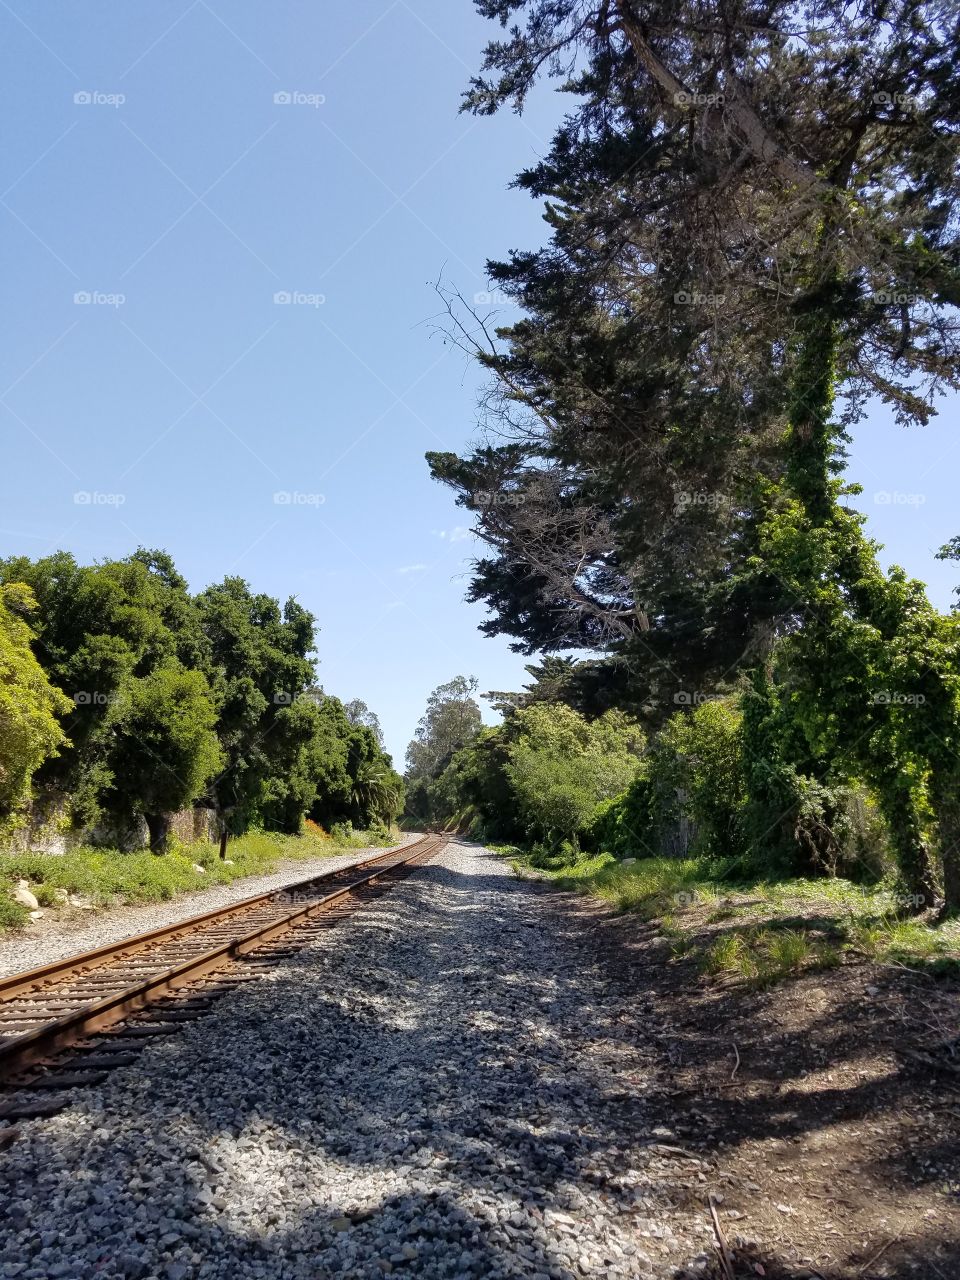 Train Tracks in Nature